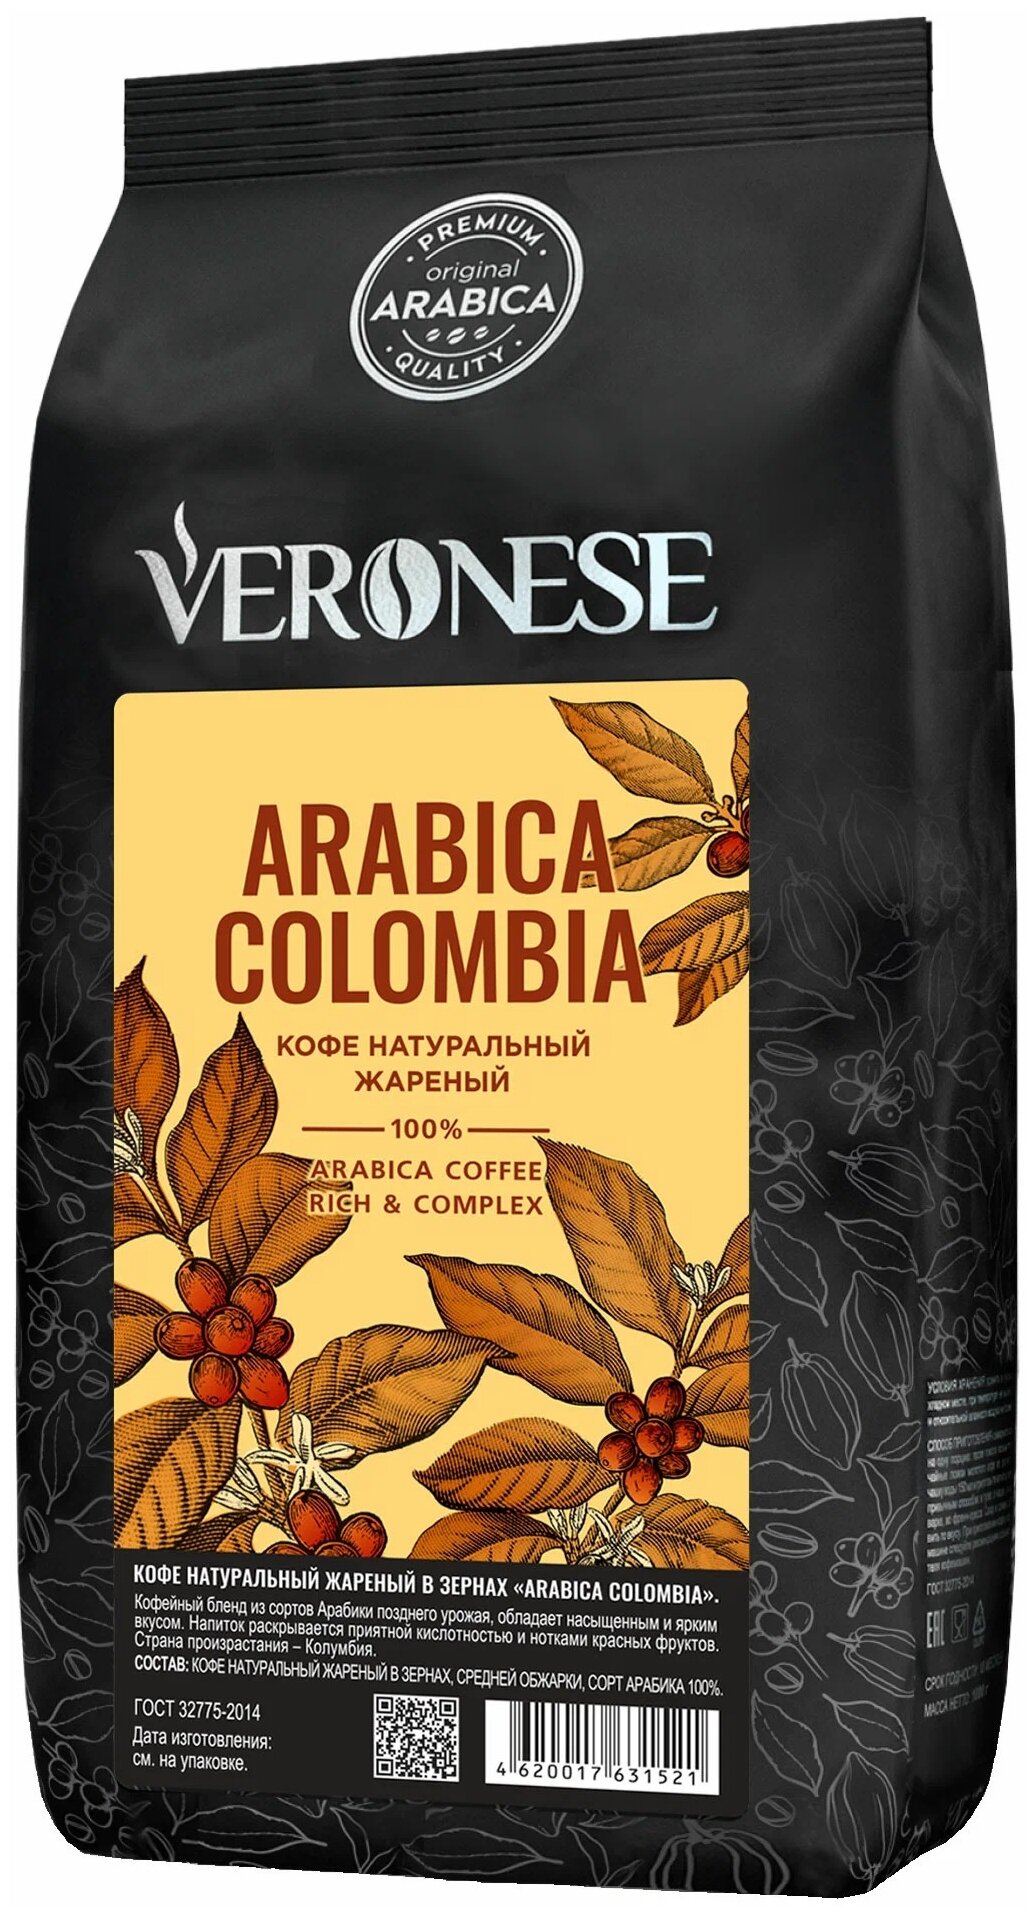 Кофе в зернах Veronese Arabica Colombia — купить в интернет-магазине по низкой цене на Яндекс Маркете